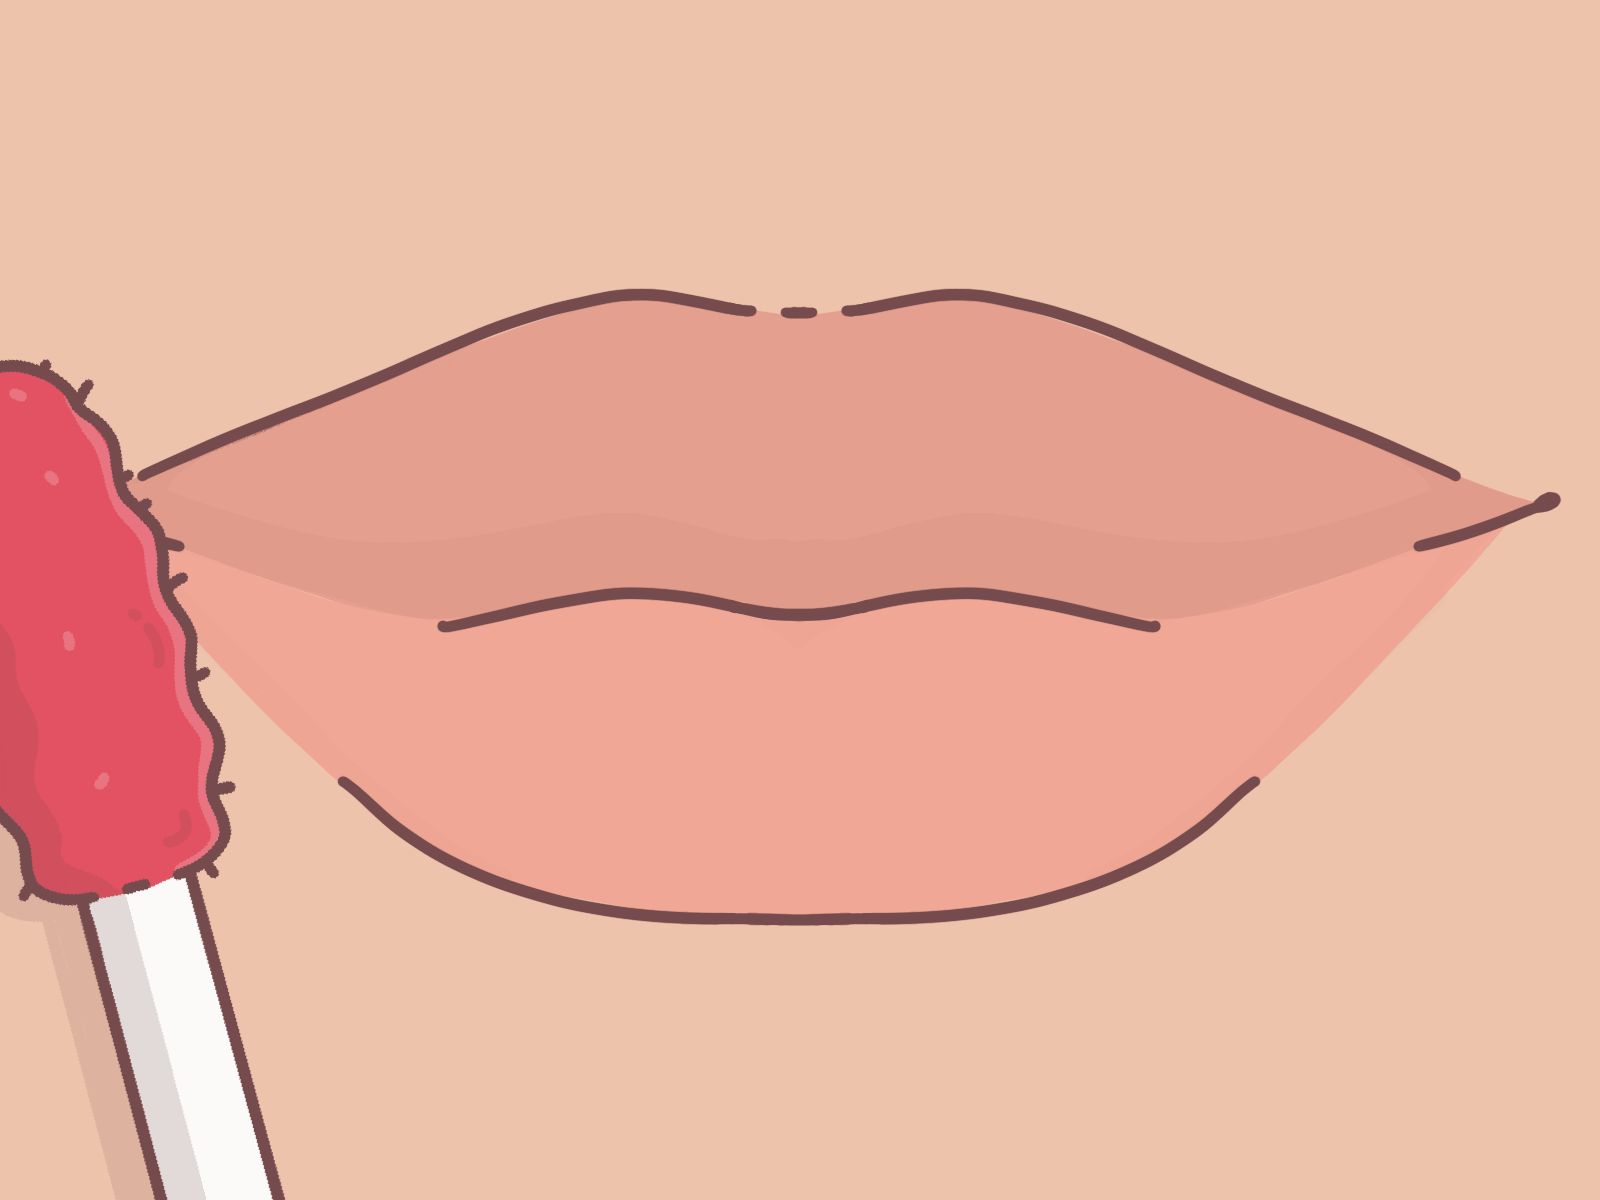 Lipgloss animation gif makeup